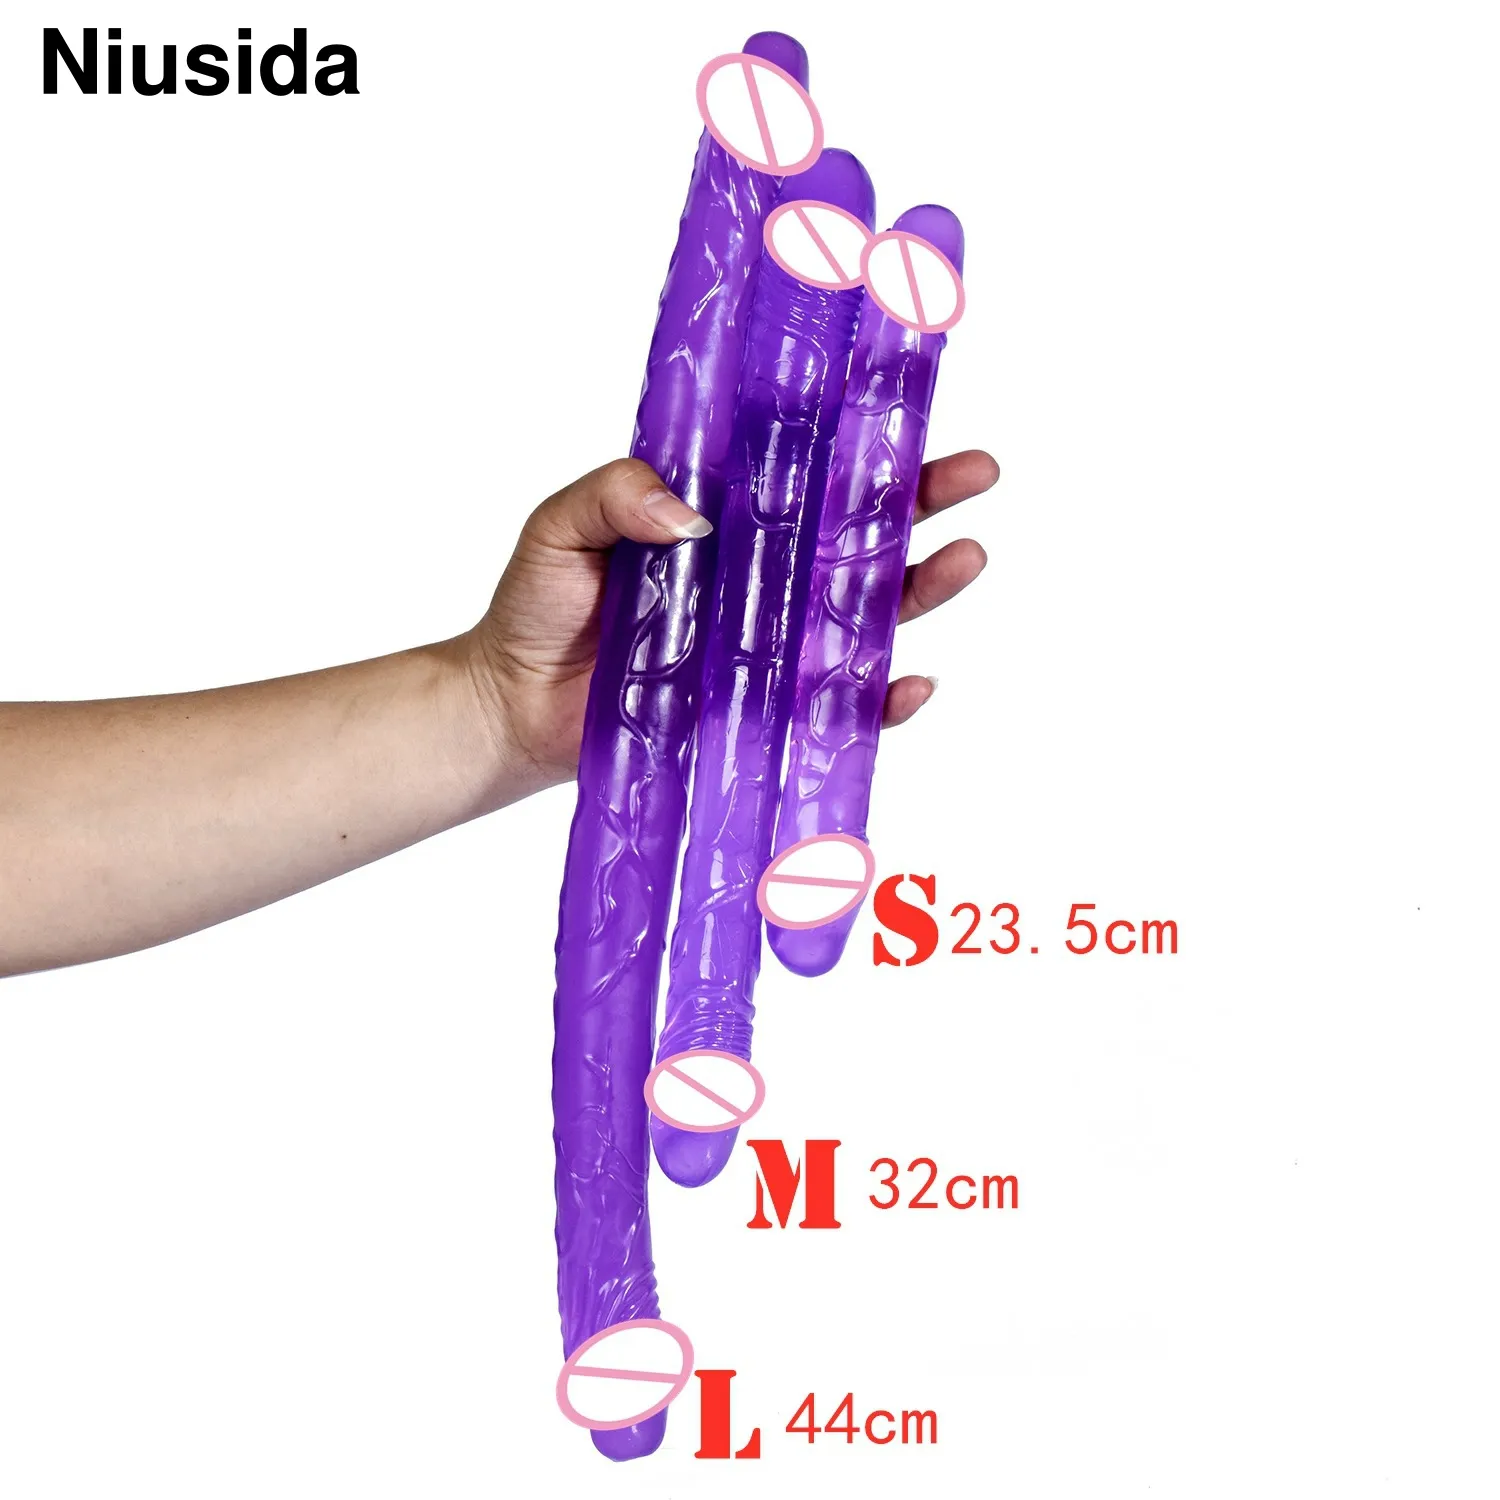 Niusida adulte sexe jouet érotique gode réaliste gros pénis en plastique G Spot Clitoris vibrateur pour les femmes